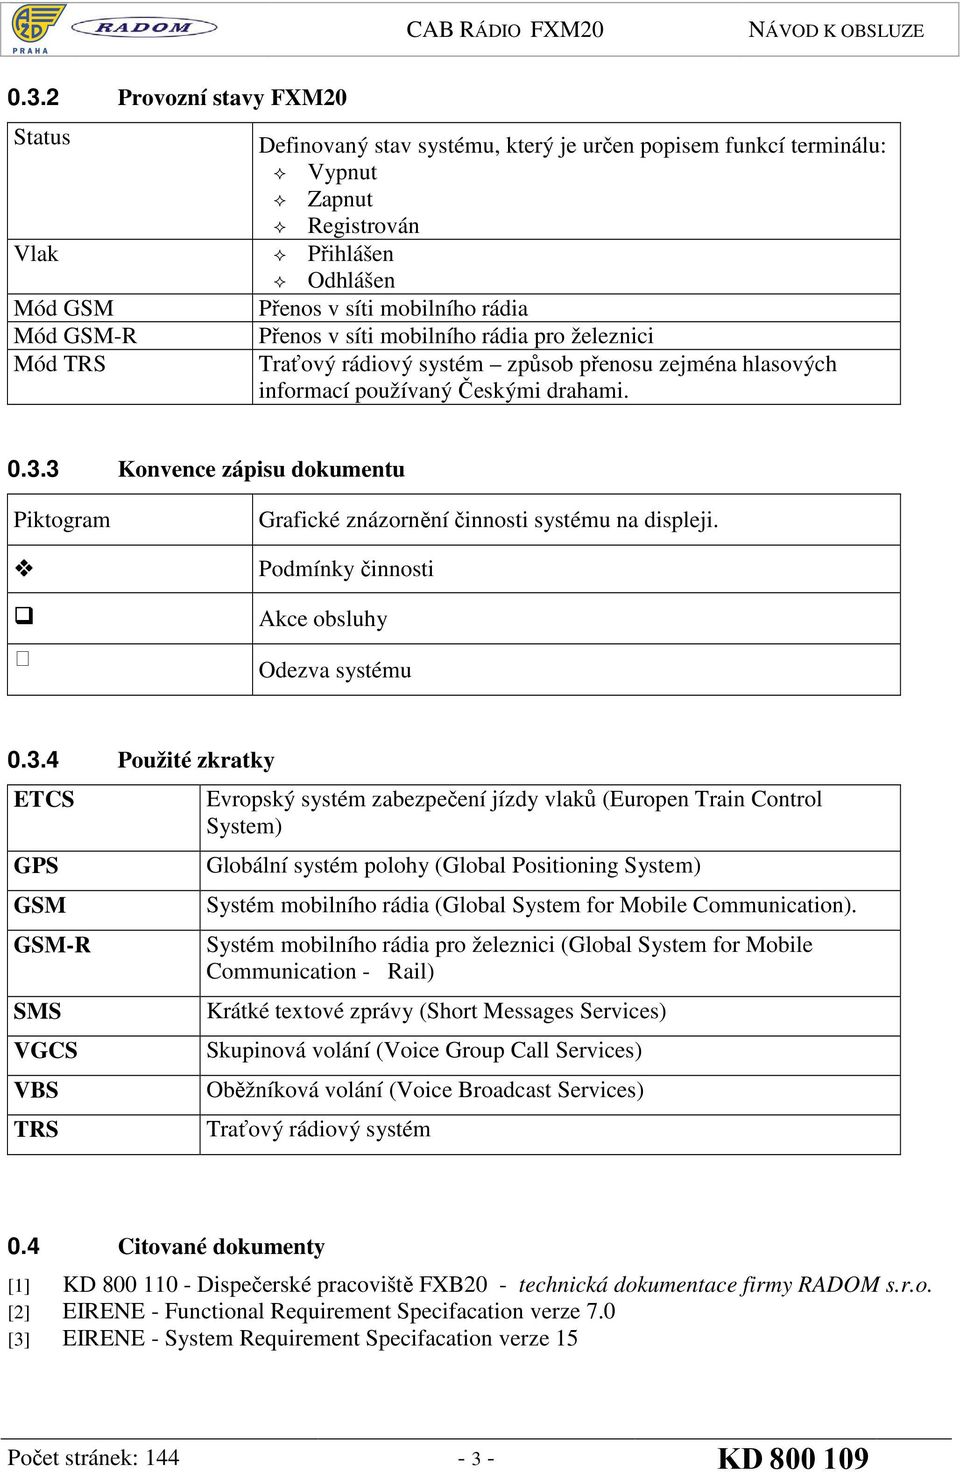 3 Konvence zápisu dokumentu Piktogram Grafické znázornění činnosti systému na displeji. Podmínky činnosti Akce obsluhy Odezva systému 0.3.4 Použité zkratky ETCS GPS GSM GSM-R SMS VGCS VBS TRS